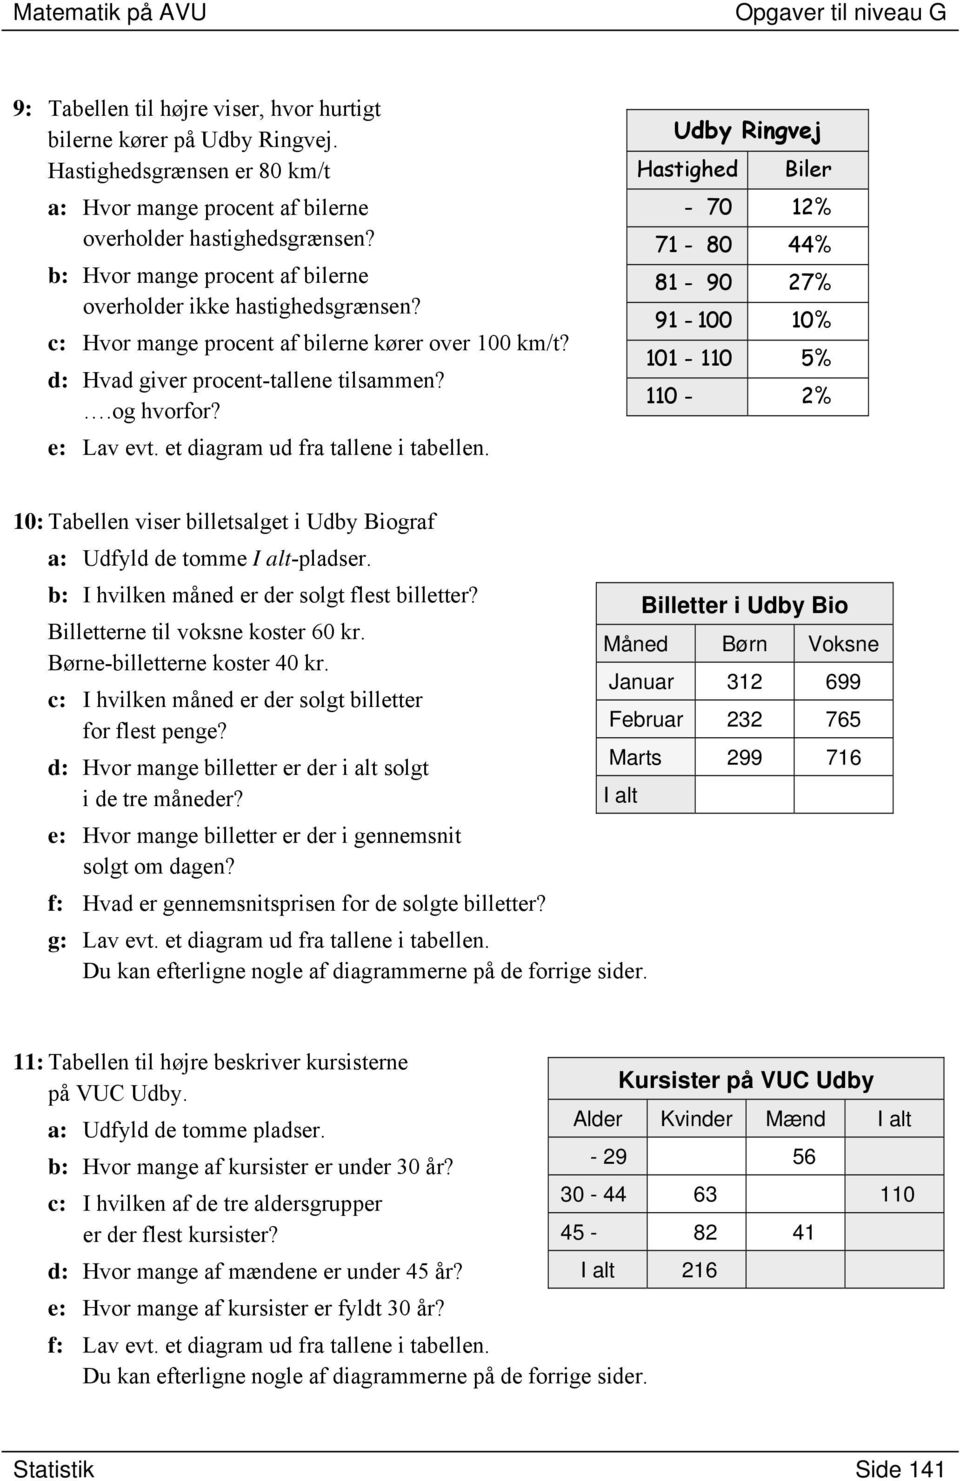 et diagram ud fra tallene i tabellen. Udby Ringvej Hastighed Biler - 7 12% 71-8 44% 81-9 27% 91-1 1% 11-11 5% 11-2% 1: Tabellen viser billetsalget i Udby Biograf a: Udfyld de tomme I alt-pladser.